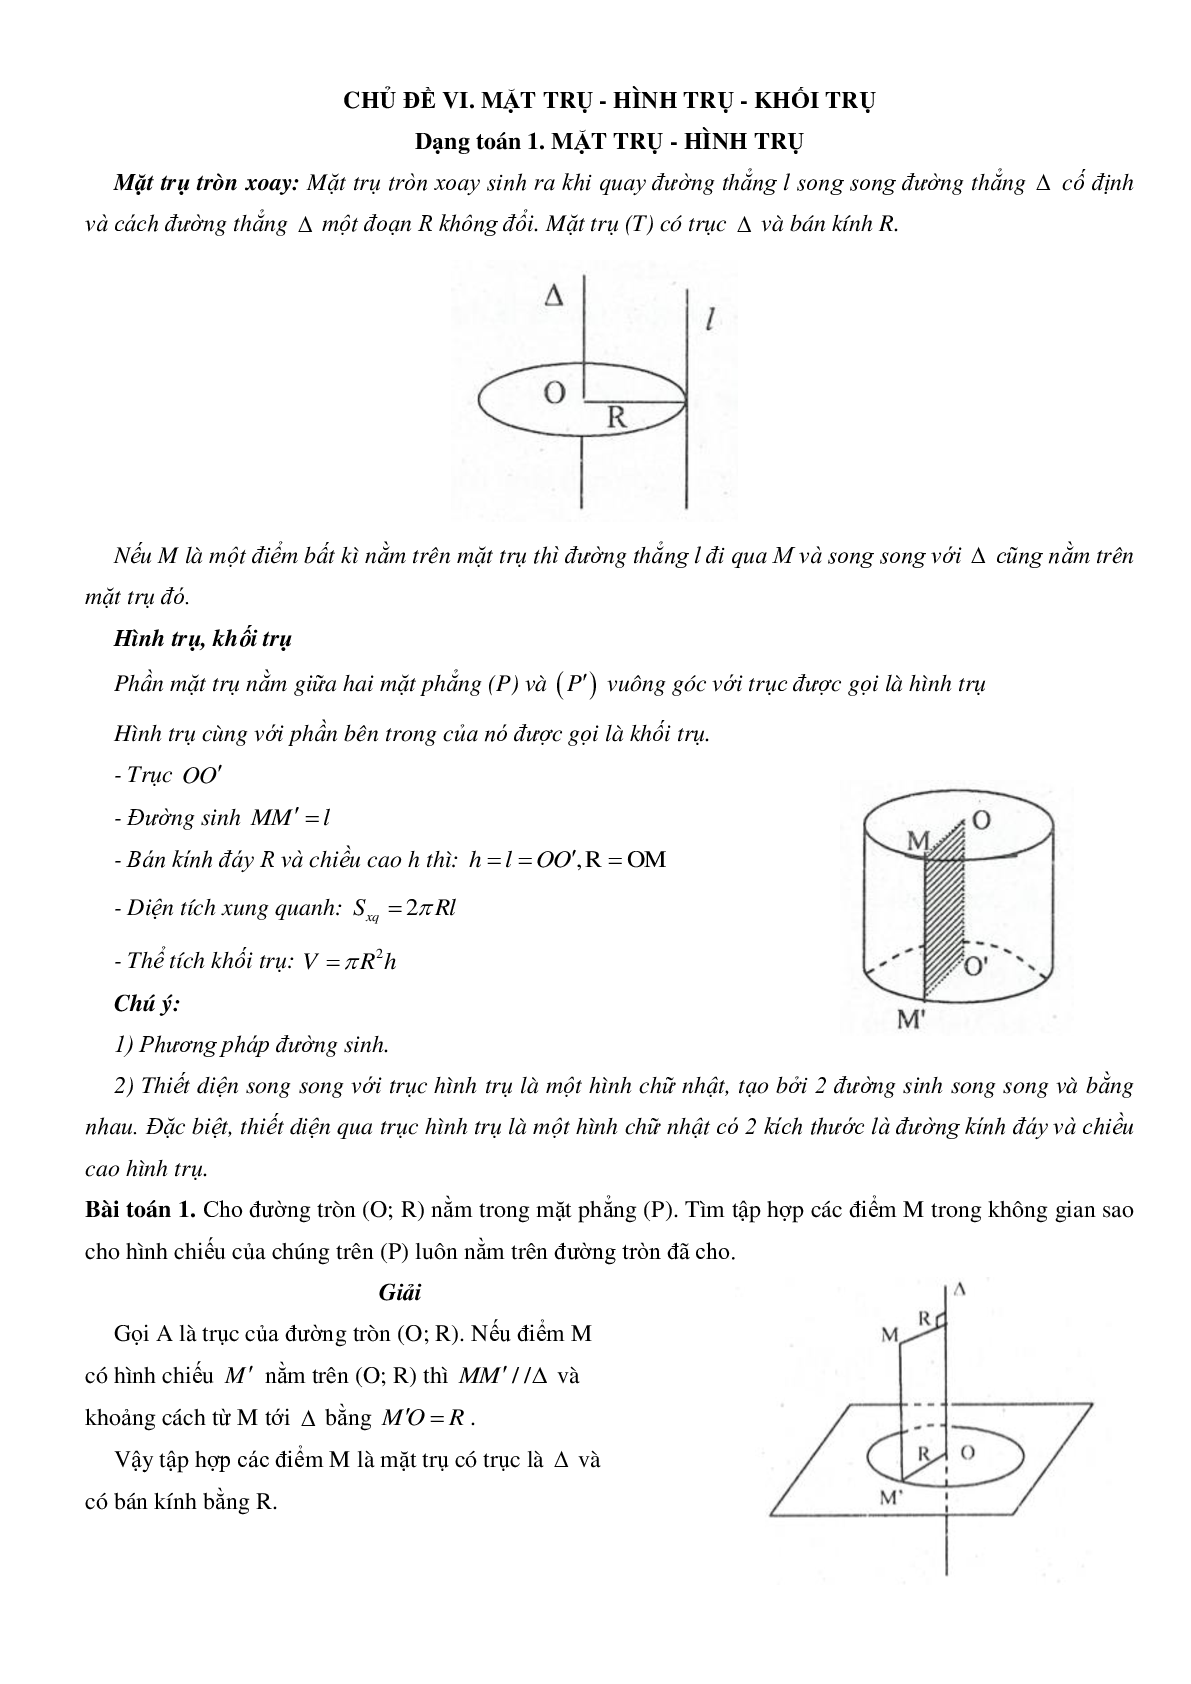 Mặt trụ - Hình trụ - Khối trụ - Ôn thi THPT QG môn toán (trang 1)